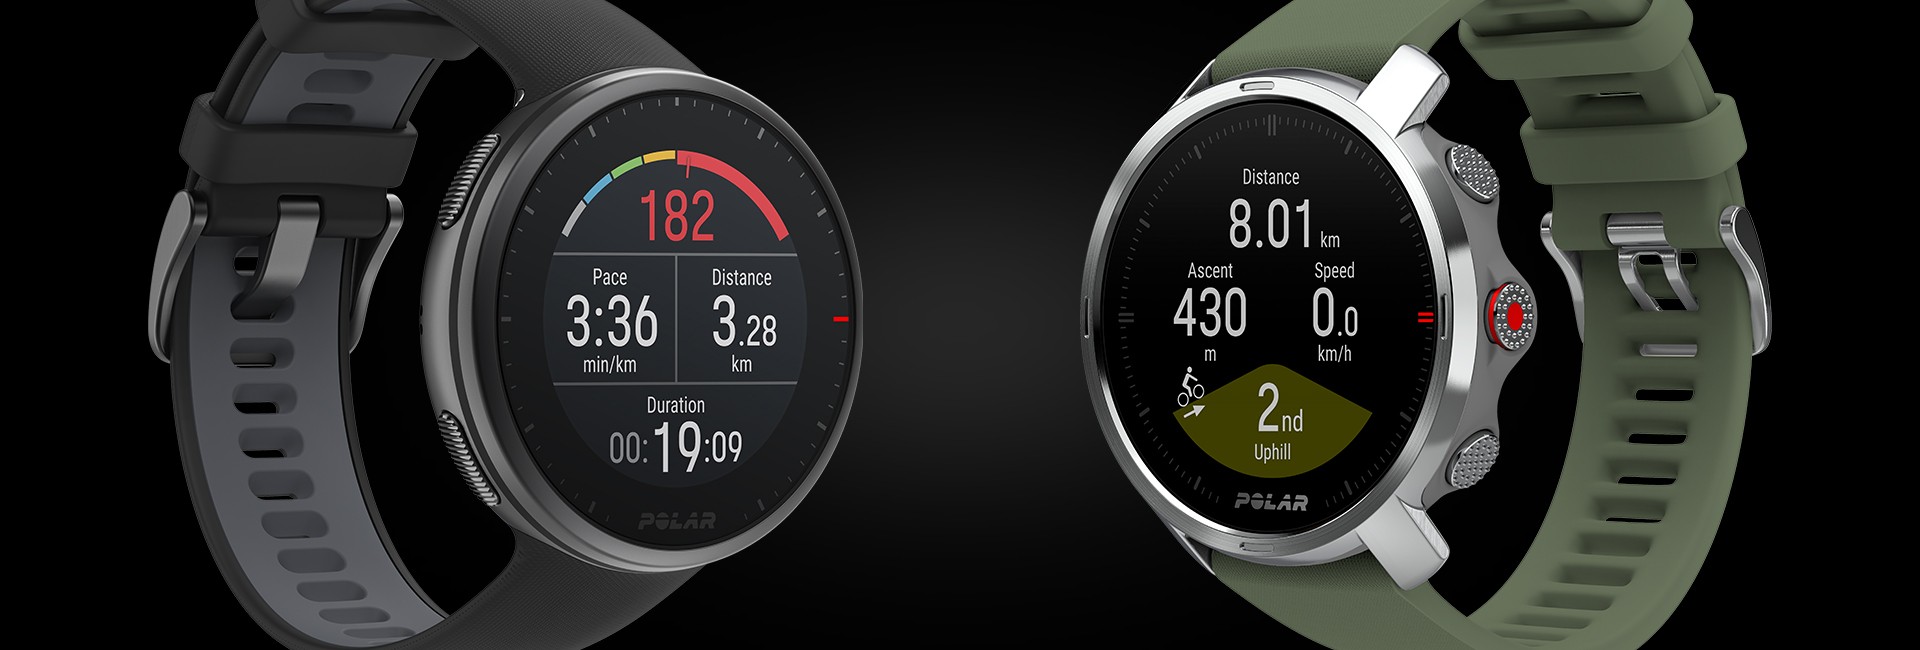 Polar Vantage M2 vs M Watches  Which Is Best? –